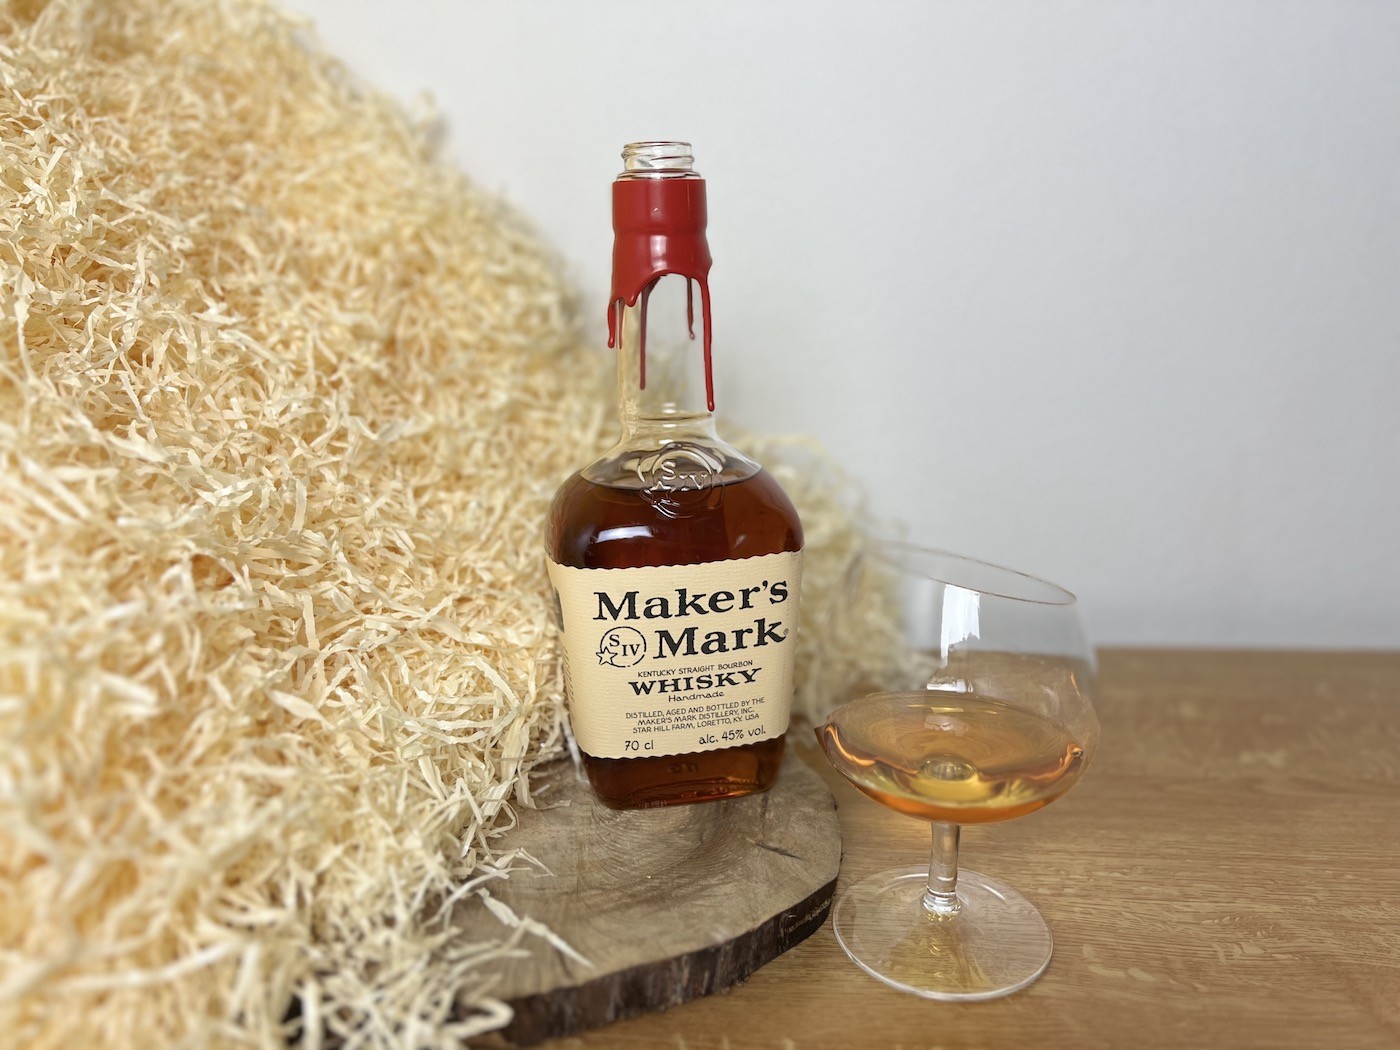 Maker's Mark Bourbon - fľaša a alkohol v pohári vedľa